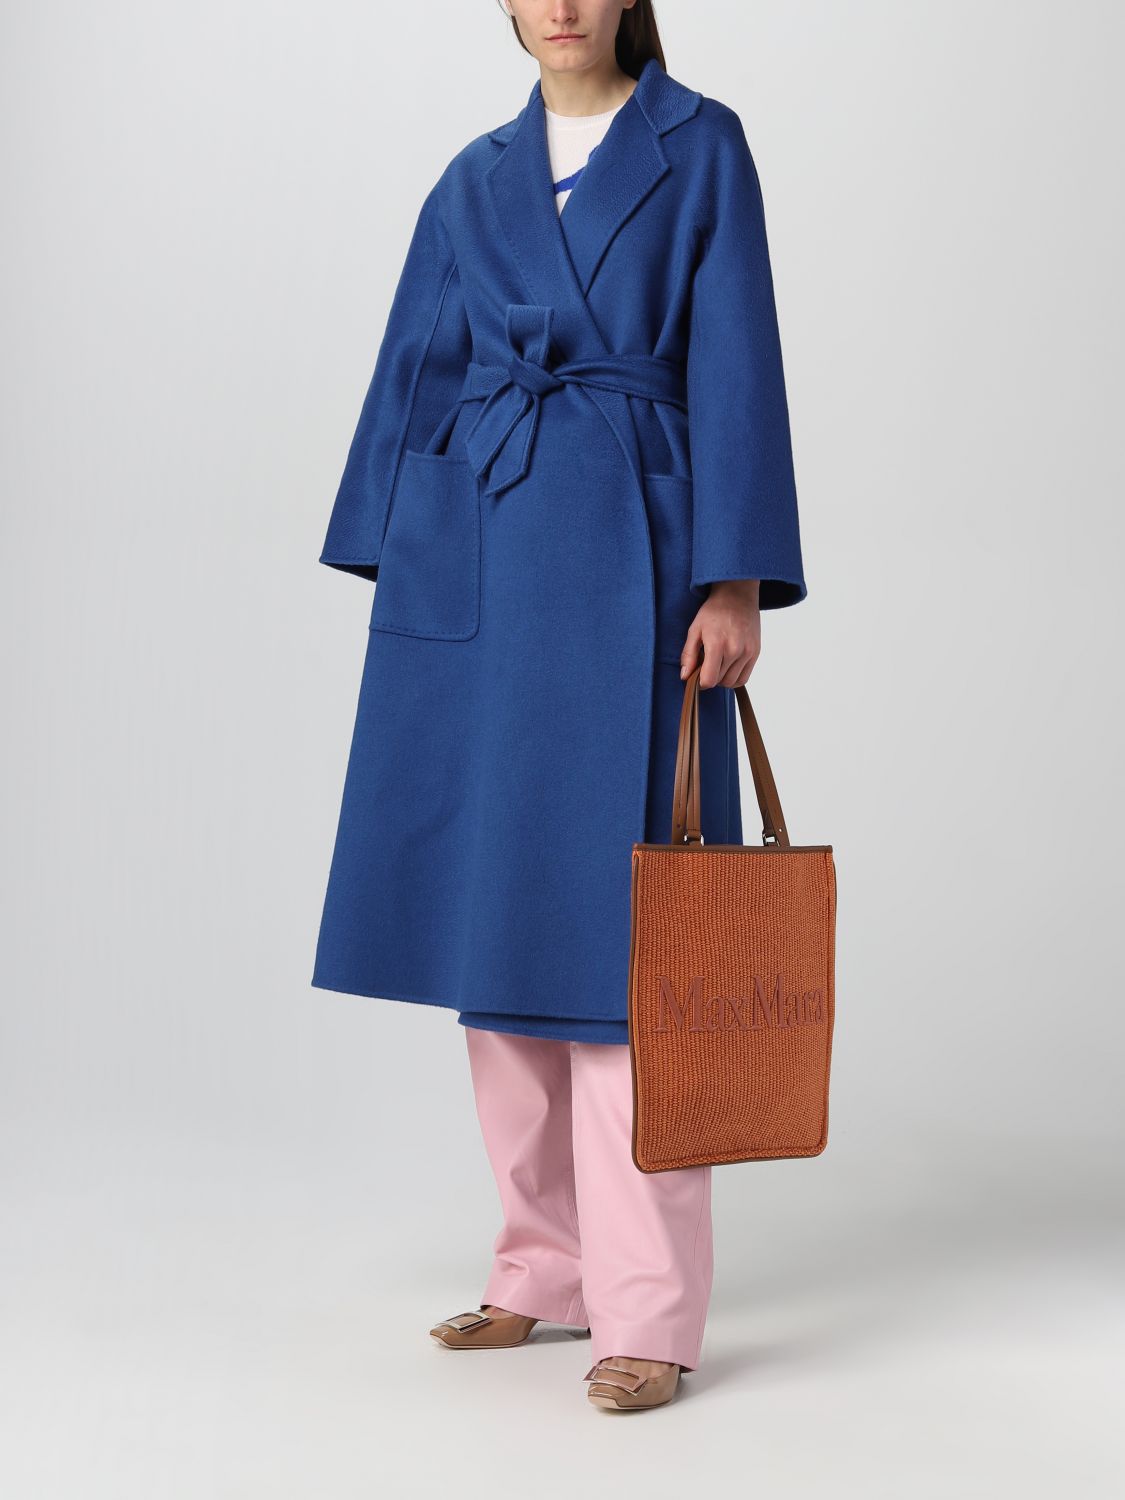 MAX MARA: cashmere coat - Blue | Max Mara coat 2310110831600 online on ...